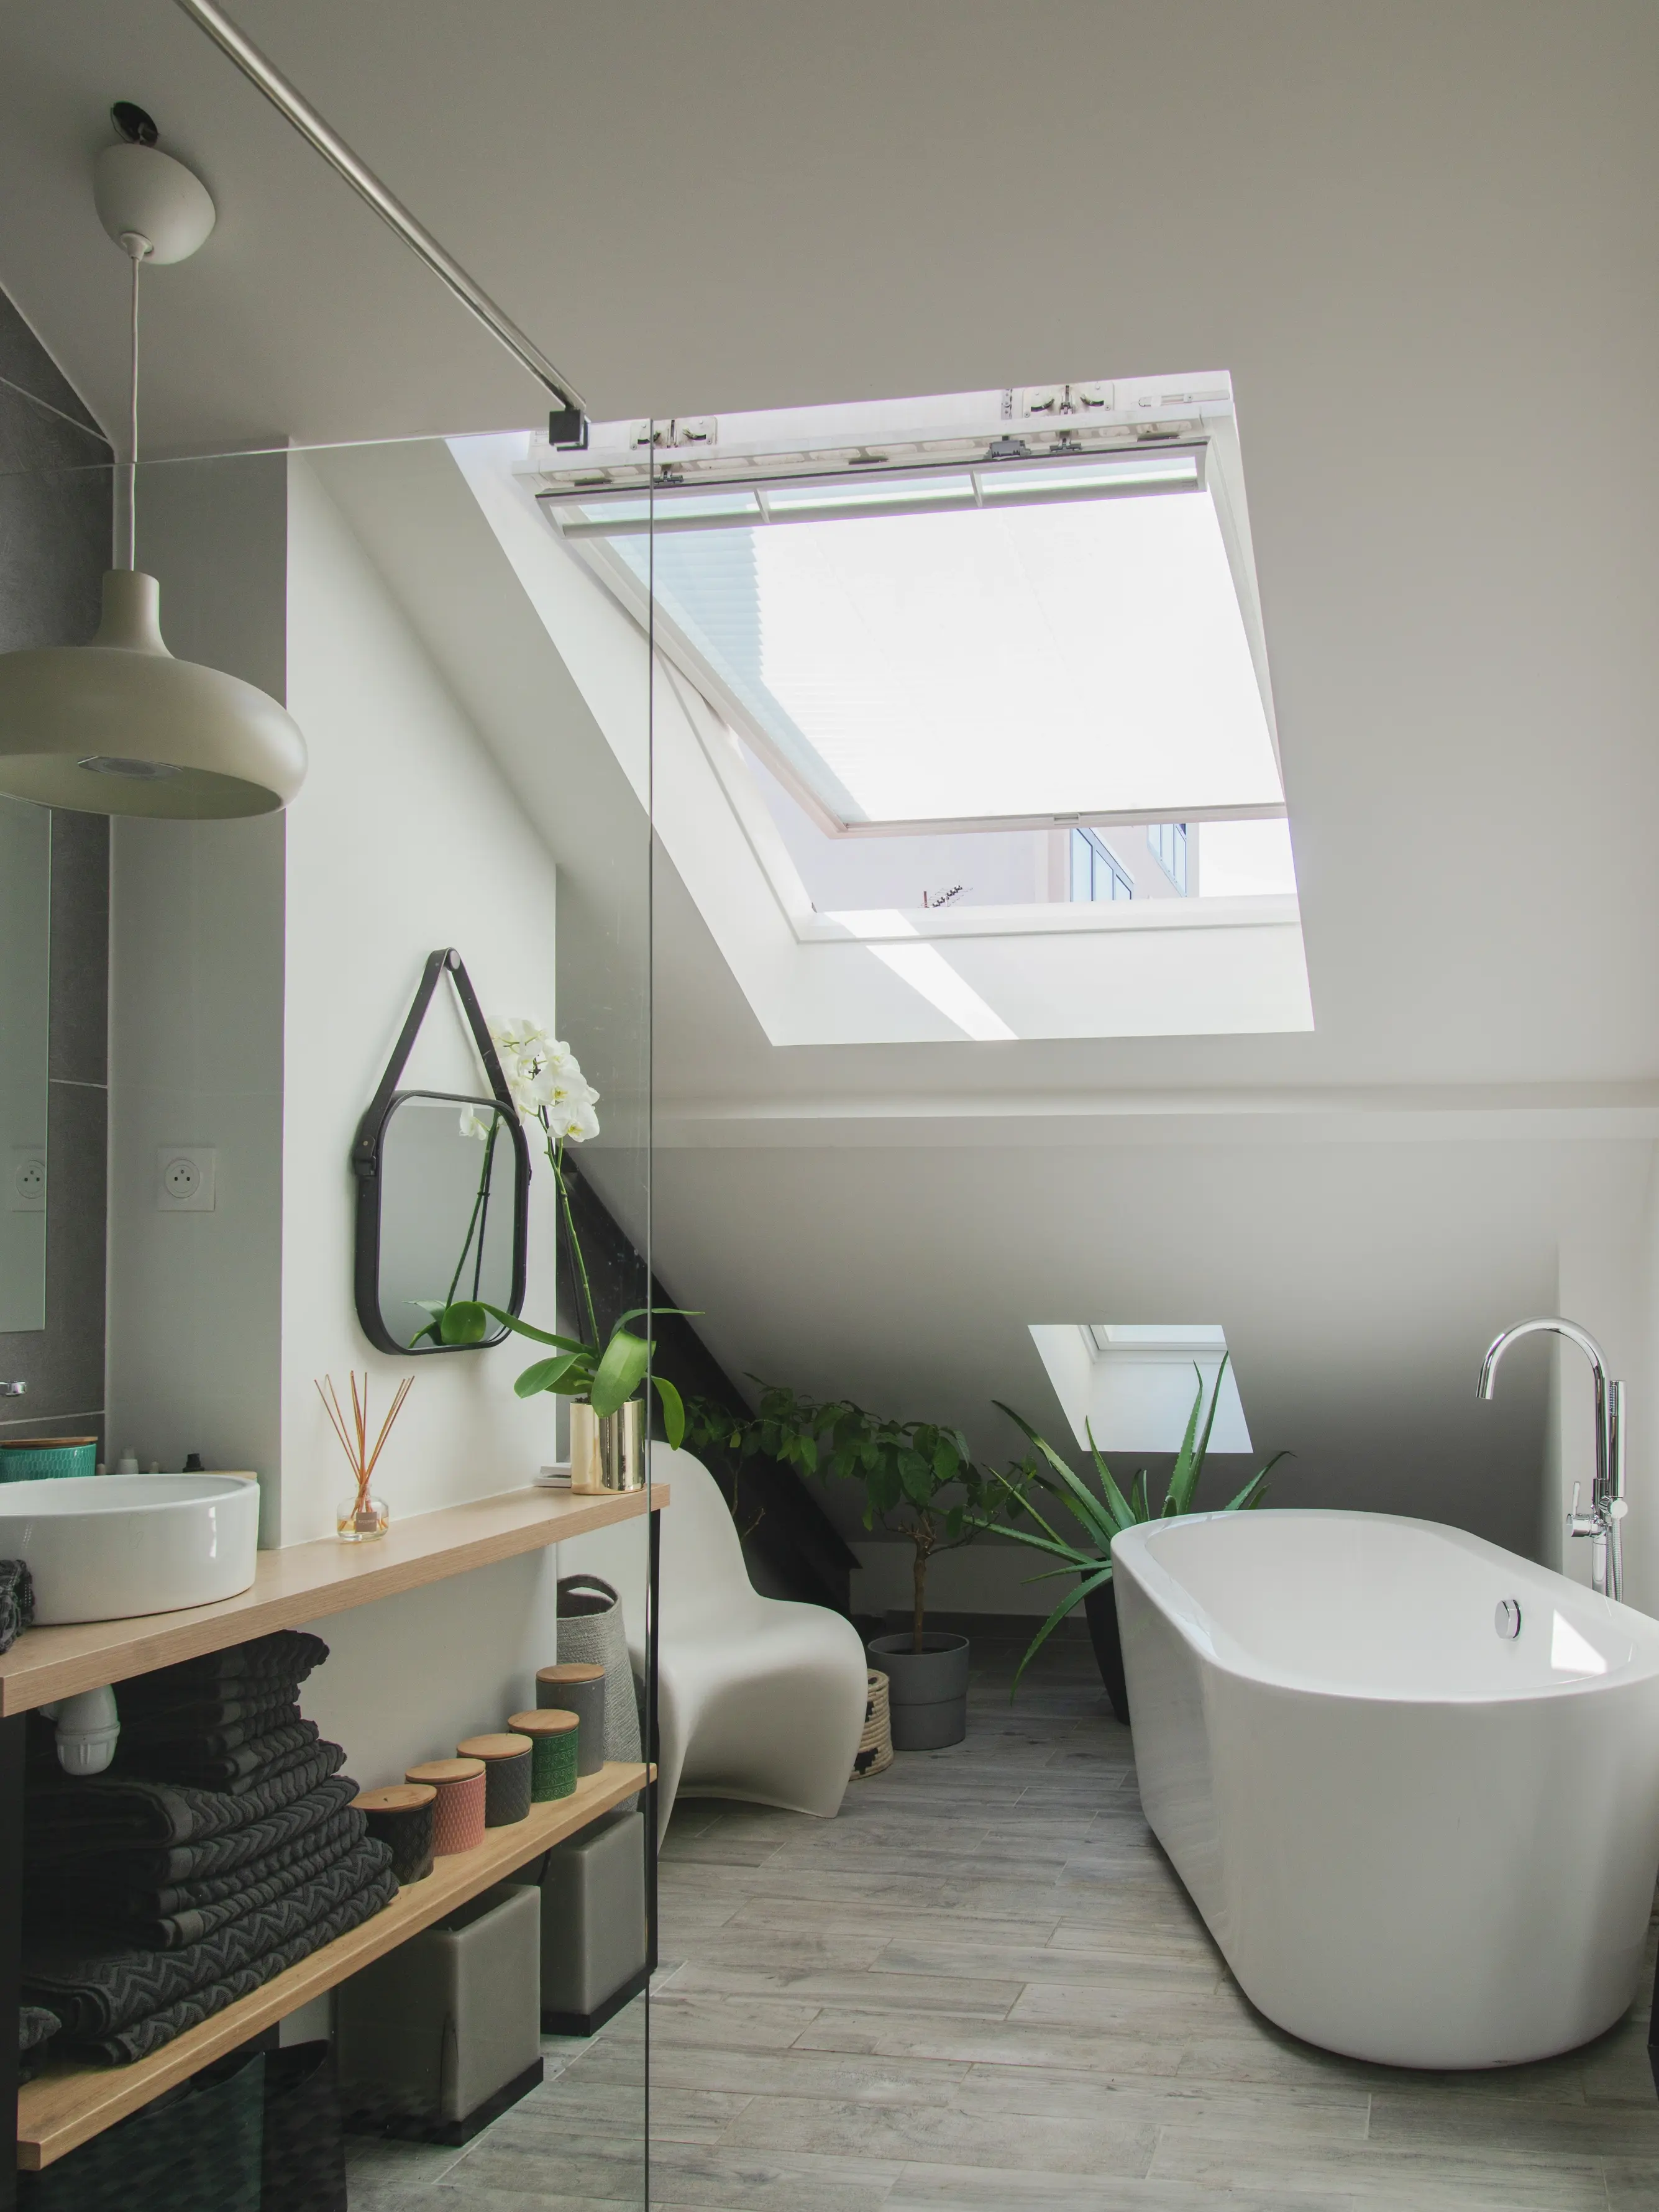 Salle de bain moderne avec fenêtre de toit VELUX, baignoire indépendante et plantes vertes.